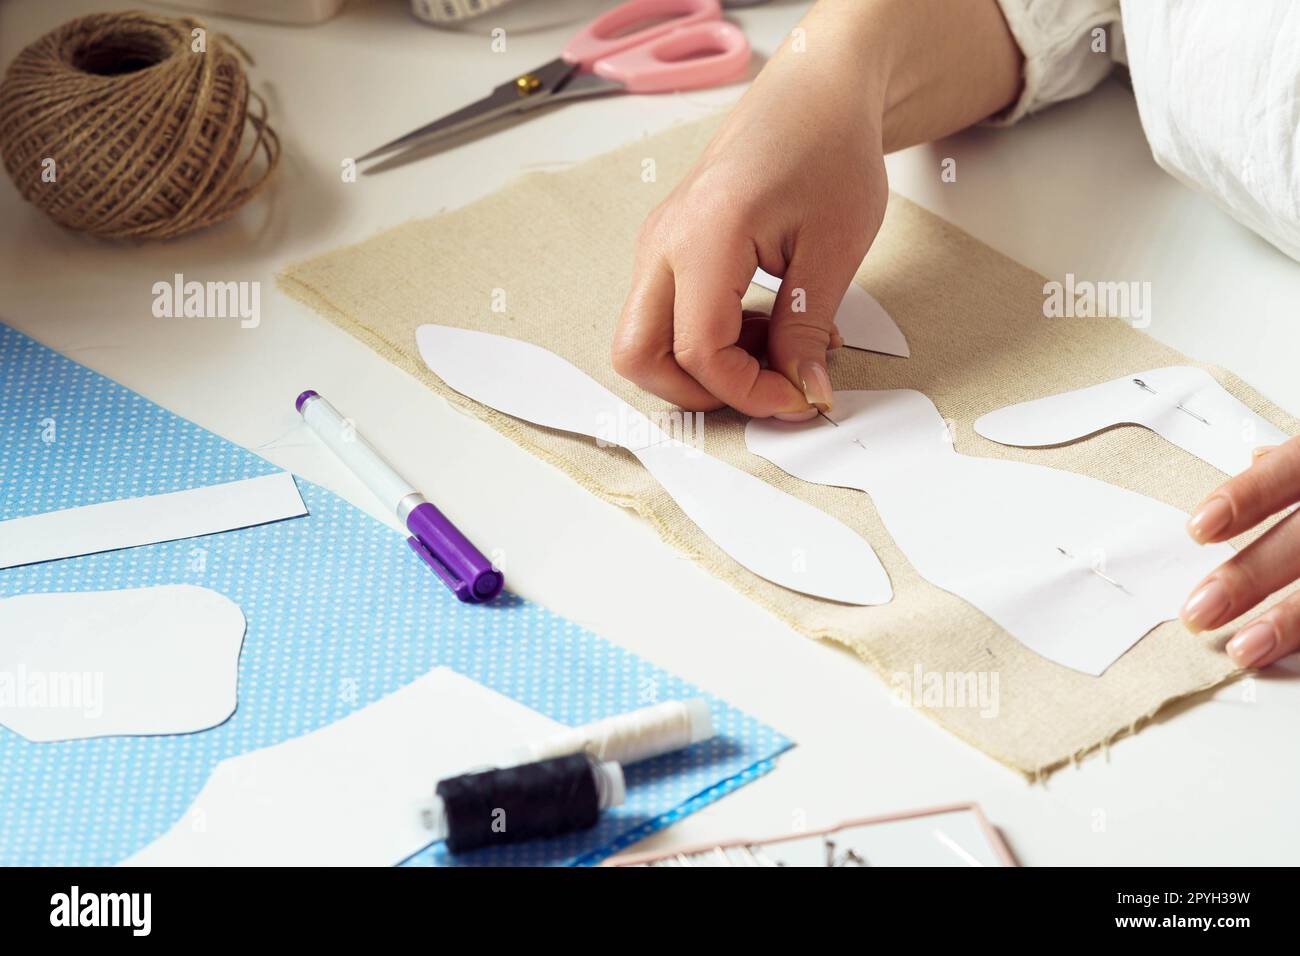 Les mains féminines recadrées prennent des mesures et épinglent des patrons de couture de papier à une feuille textile sur la table. Fil à broder Banque D'Images